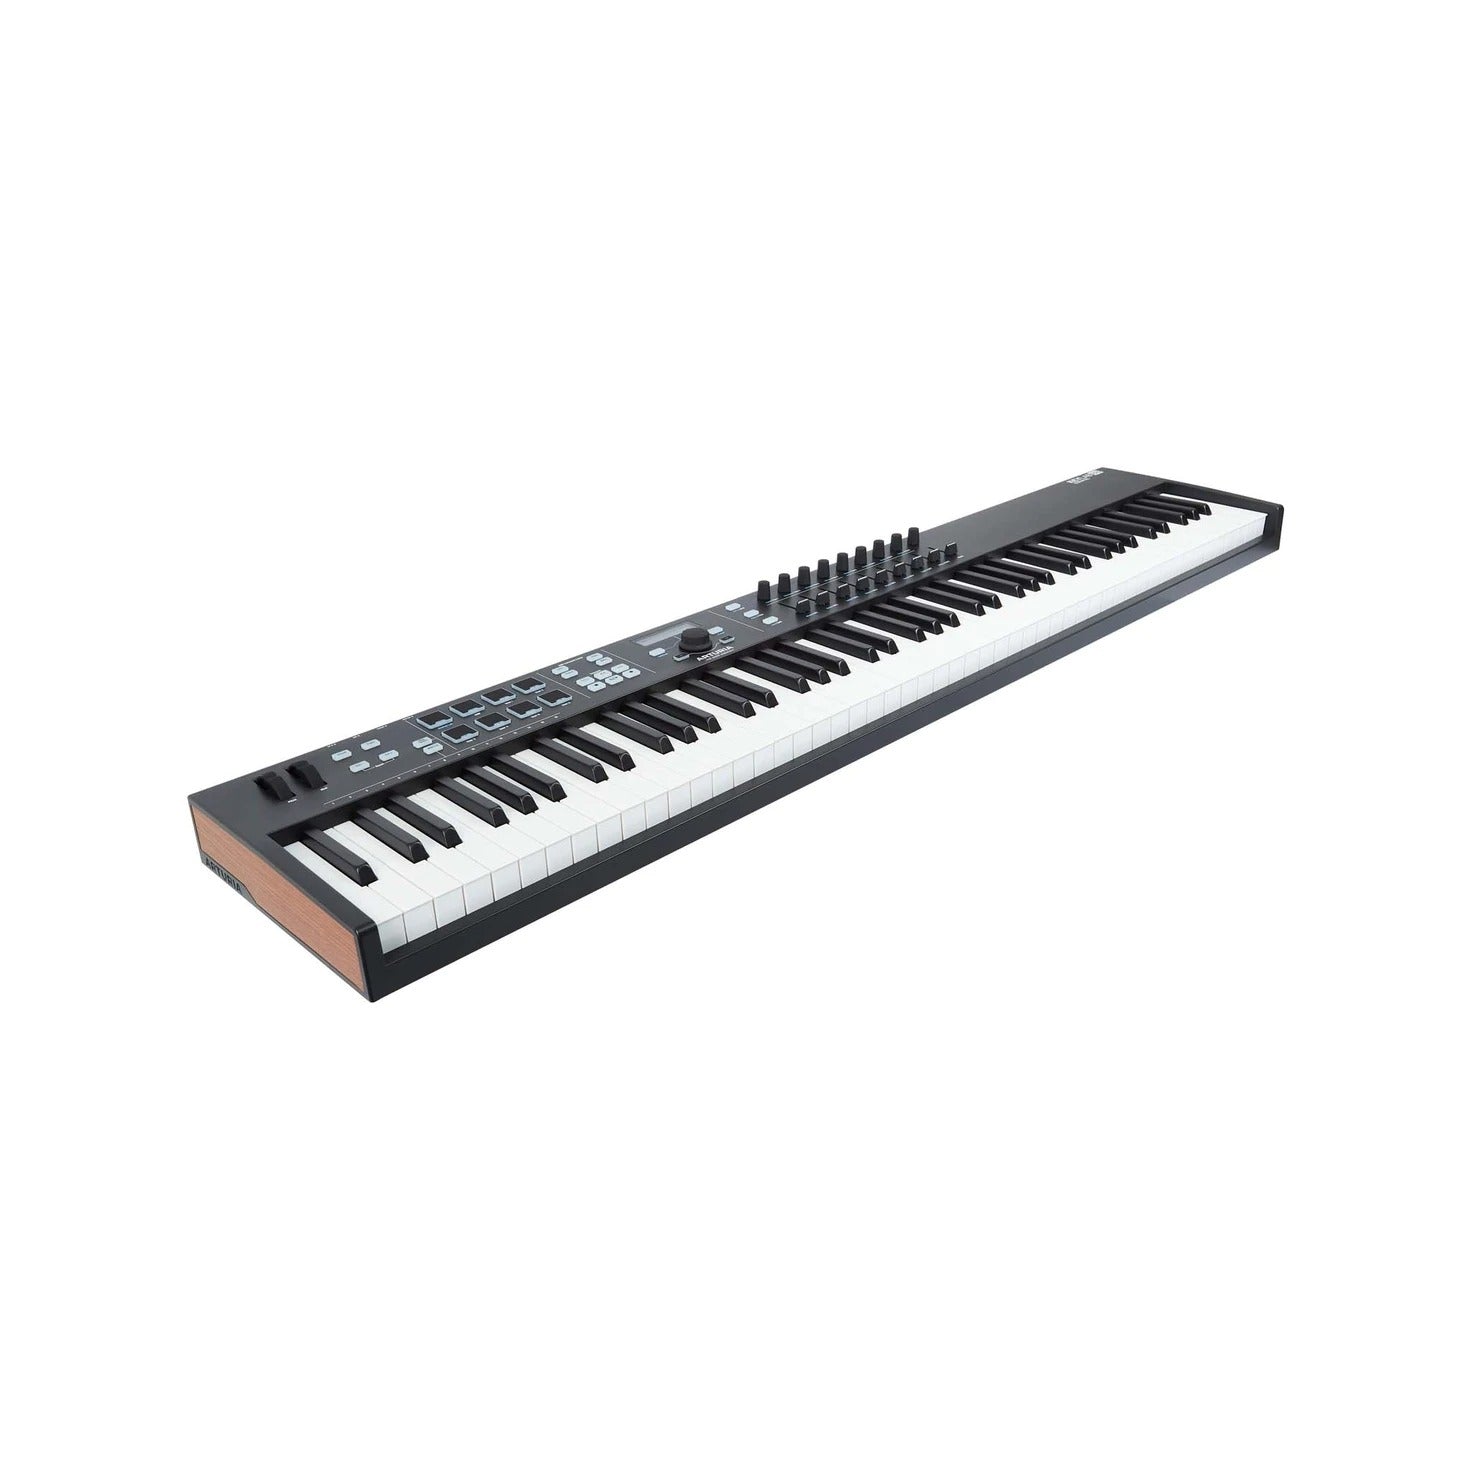 MIDI Keyboard Controller Arturia Keylab Essential 88 - Việt Music